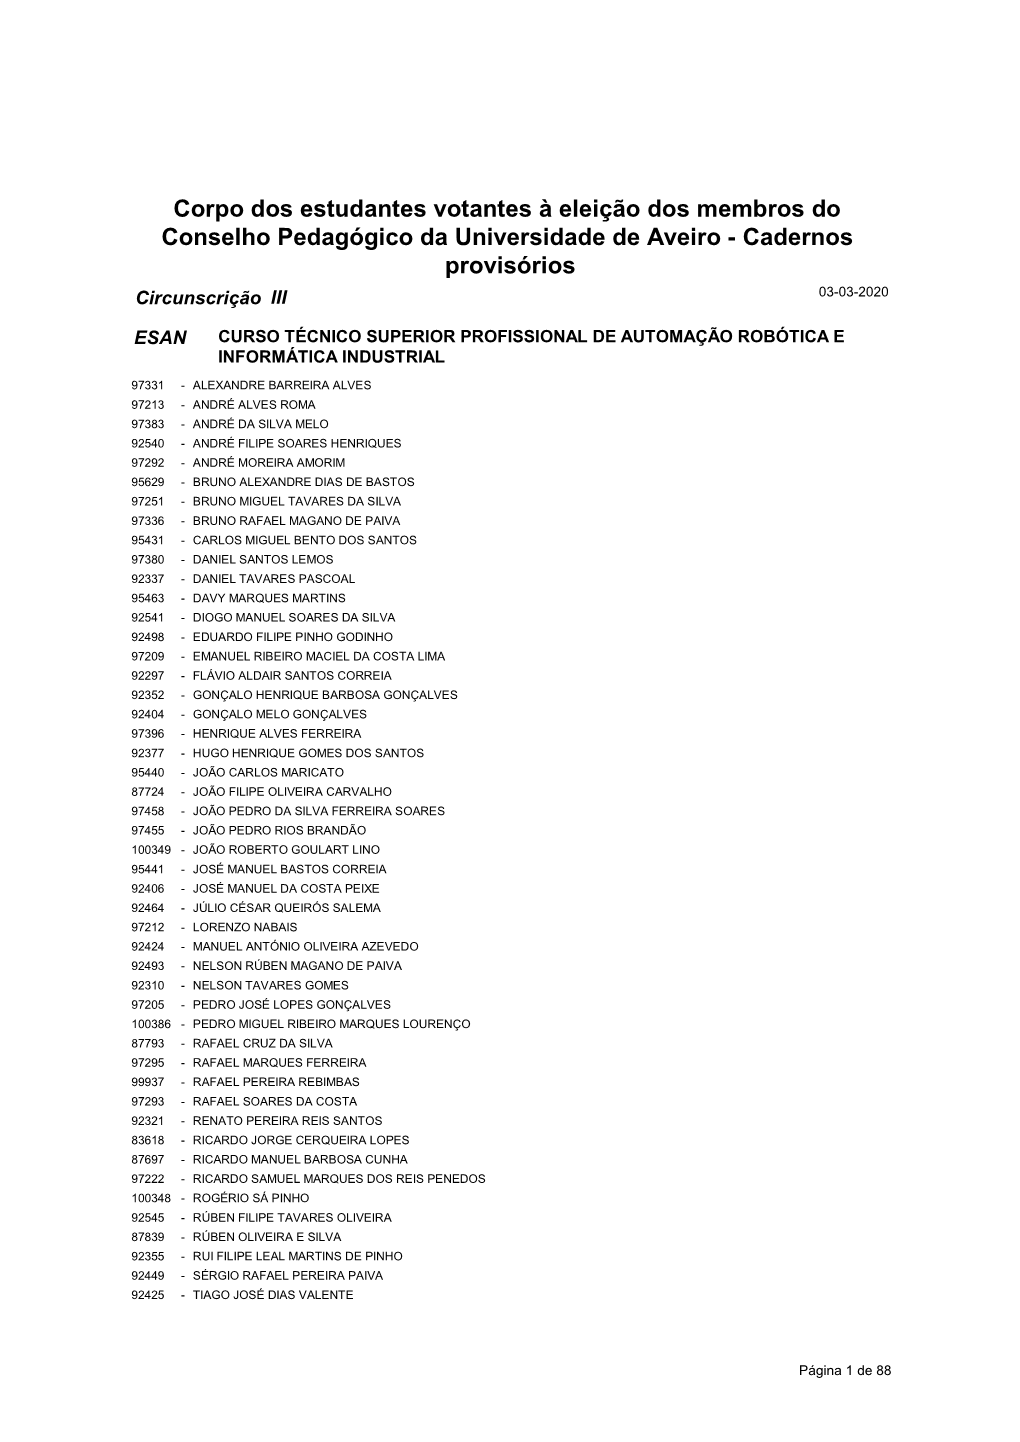 Corpo Dos Estudantes Votantes À Eleição Dos Membros Do Conselho Pedagógico Da Universidade De Aveiro - Cadernos Provisórios Circunscrição III 03-03-2020